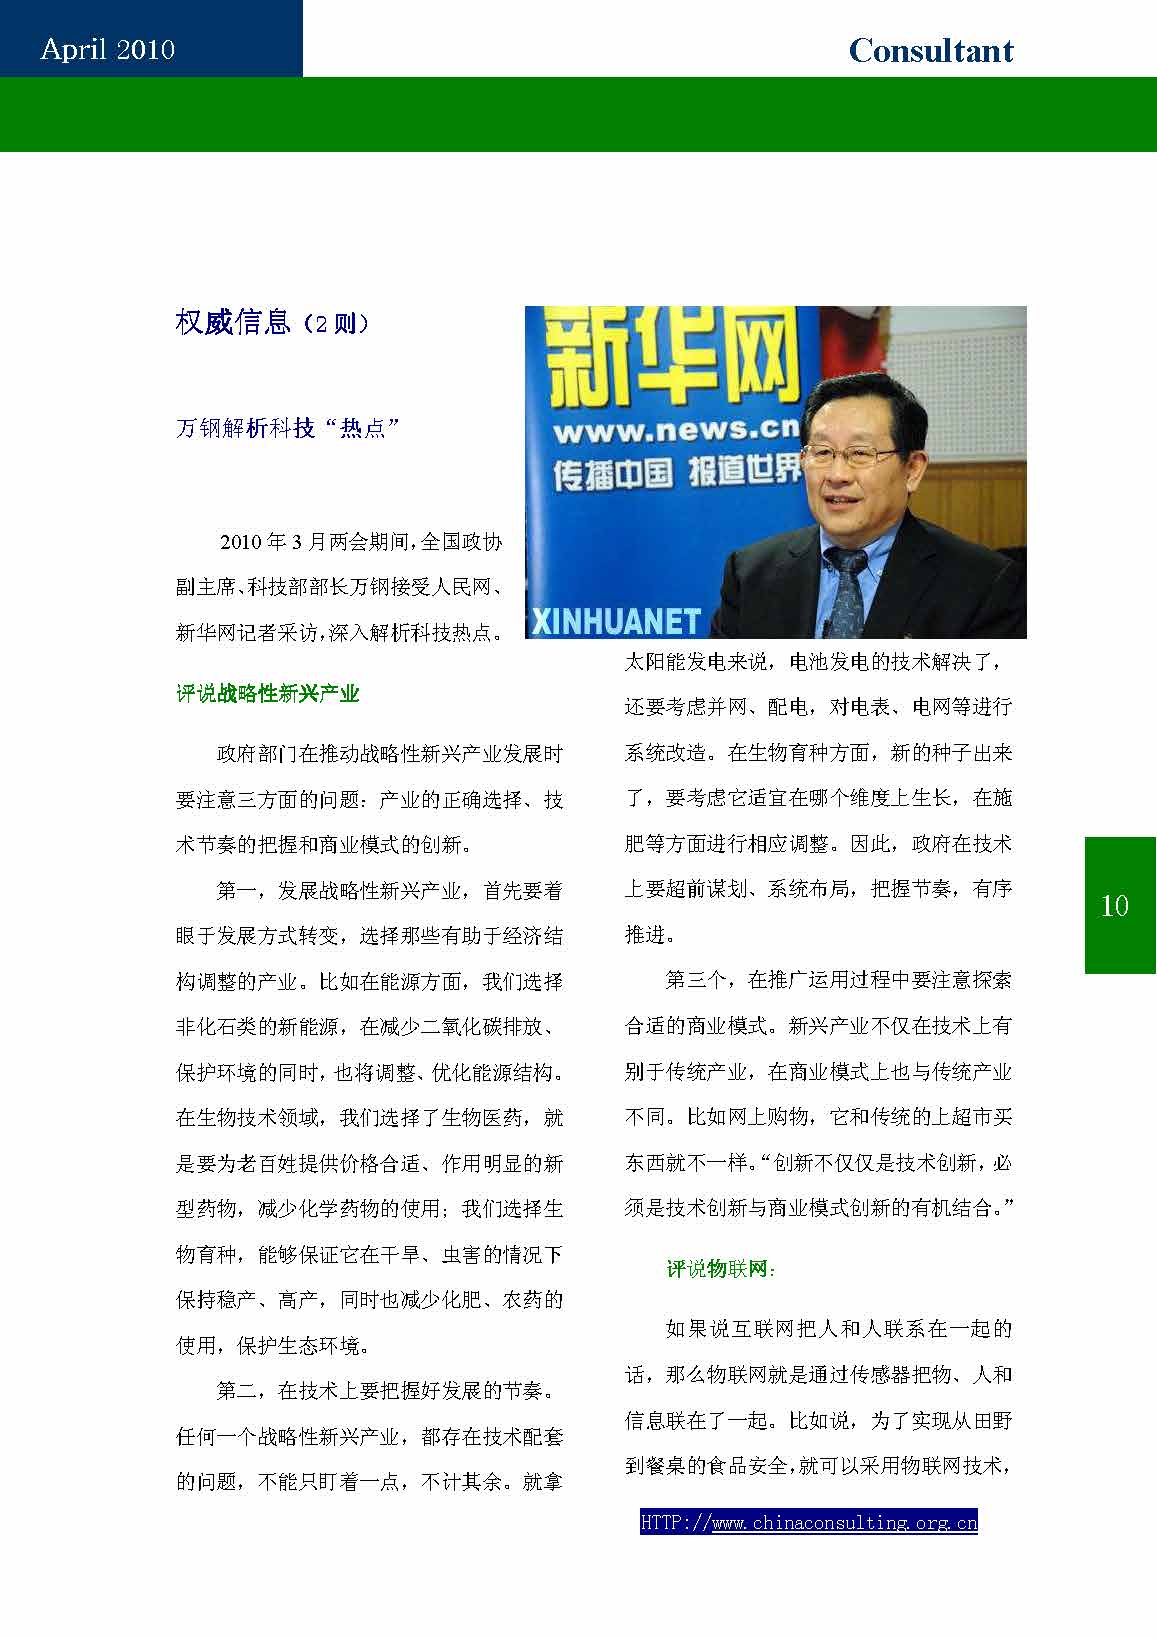 9中国科技咨询协会第九期会刊_页面_12.jpg